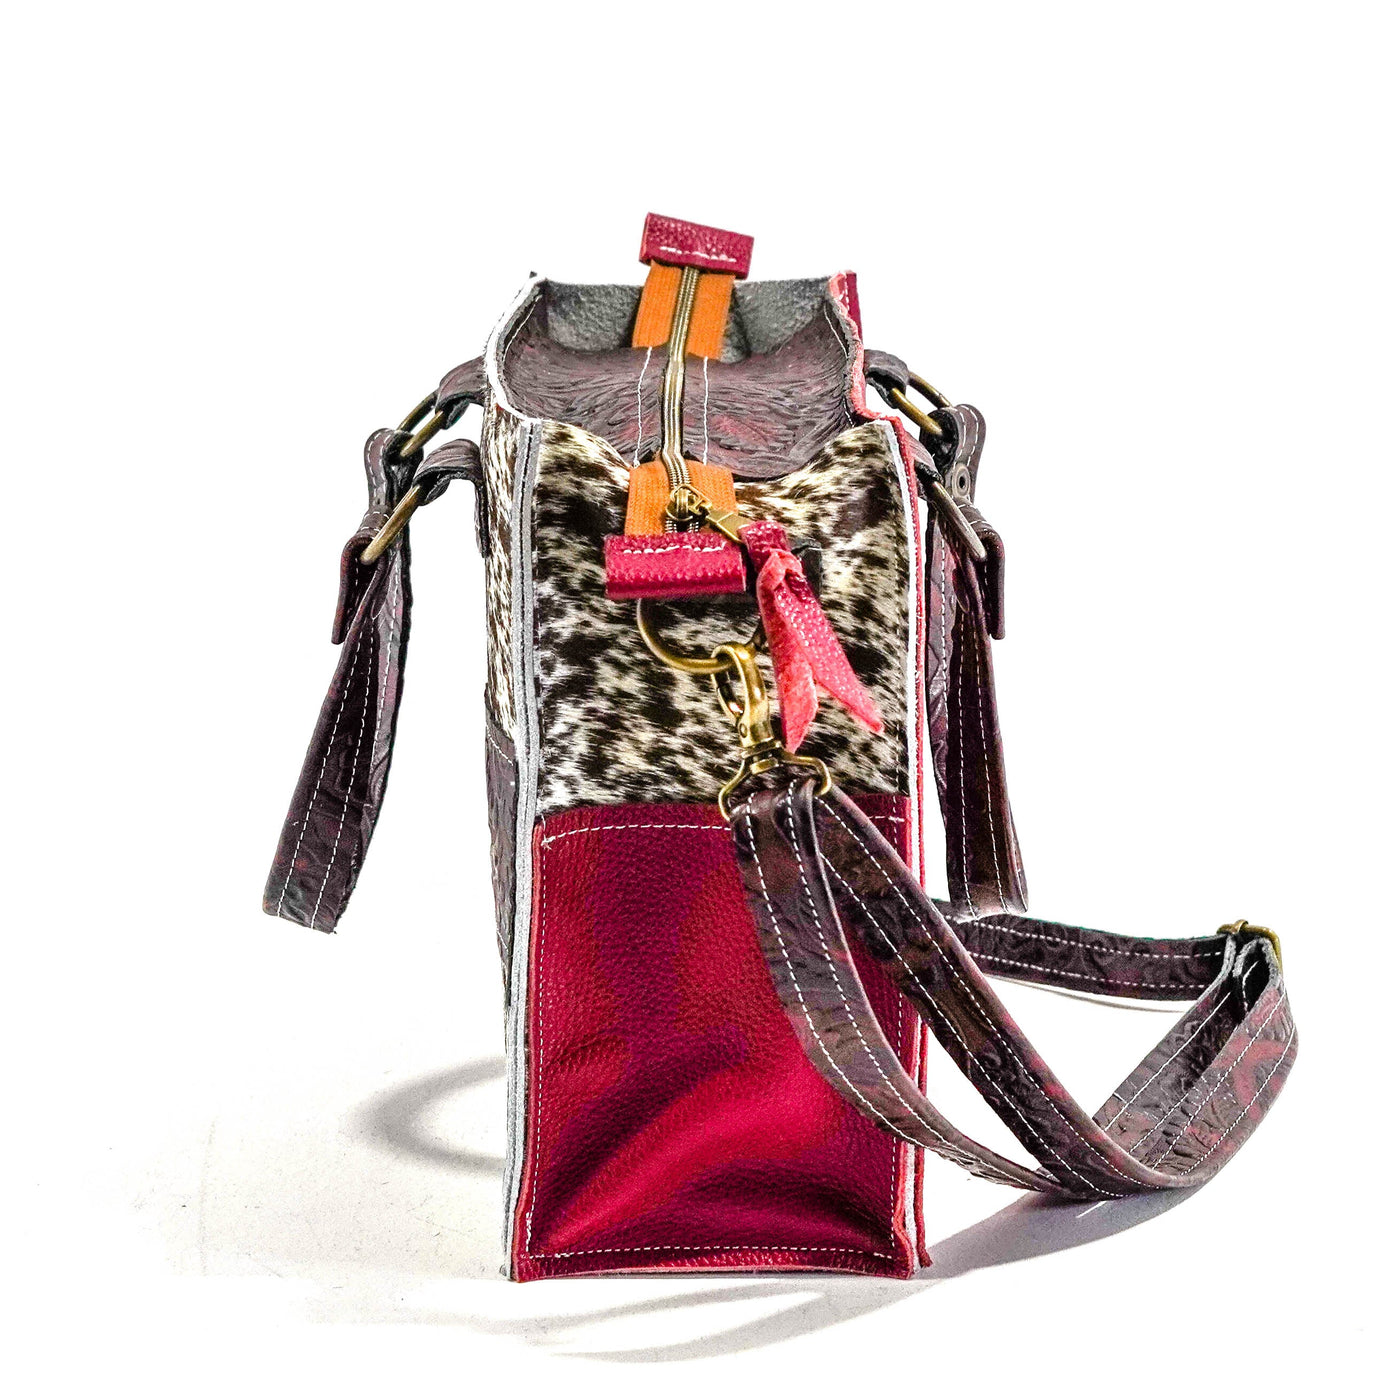 Minnie Pearl - Longhorn w/ Burgundy Tool-Minnie Pearl-Western-Cowhide-Bags-Handmade-Products-Gifts-Dancing Cactus Designs